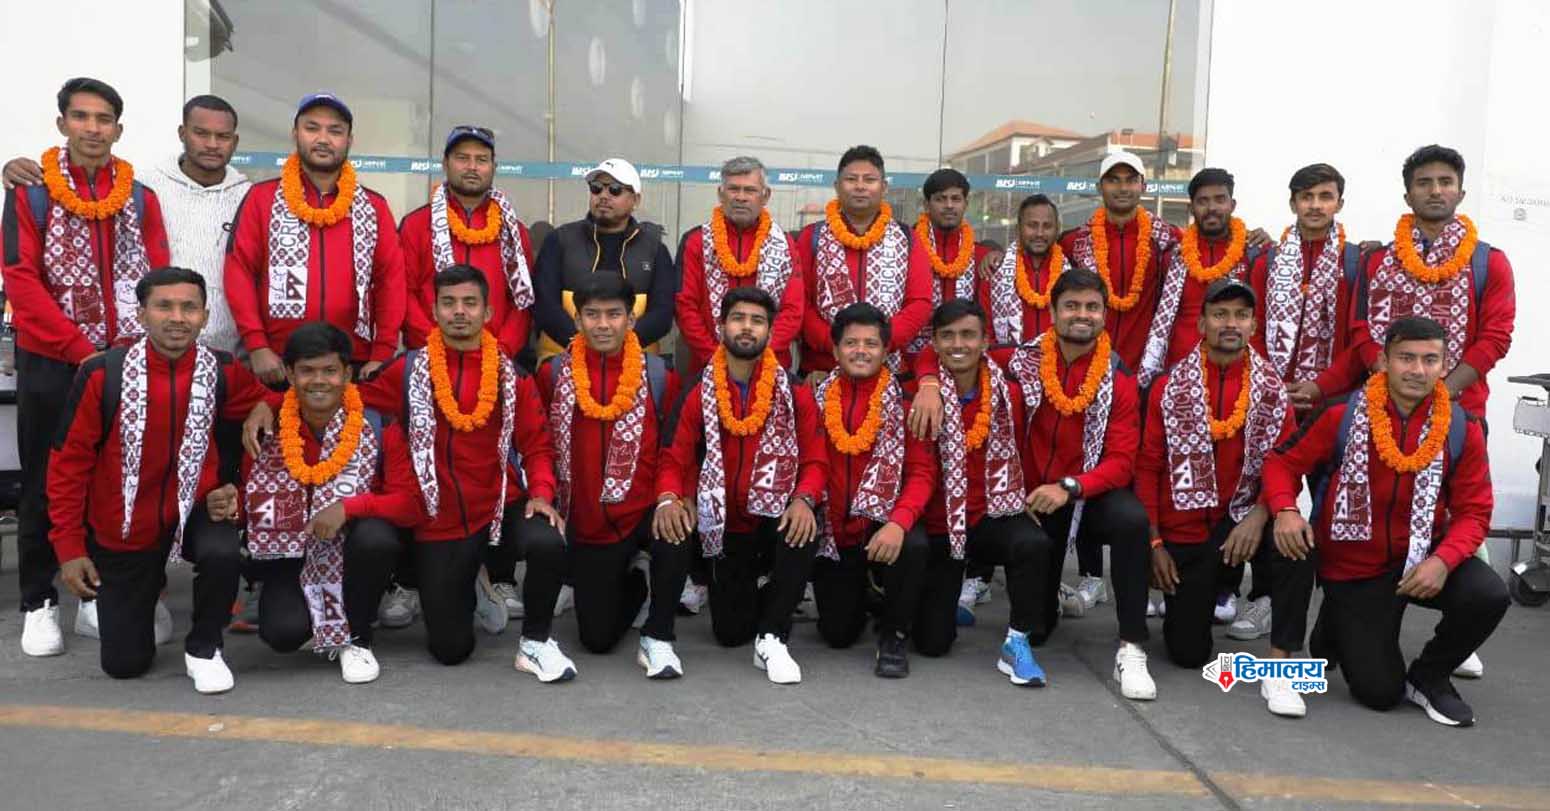 एकदिवसीय क्रिकेटमा सहभागी भइ नेपाली यु-१९ राष्ट्रिय क्रिकेट टोली स्वदेश फिर्ता